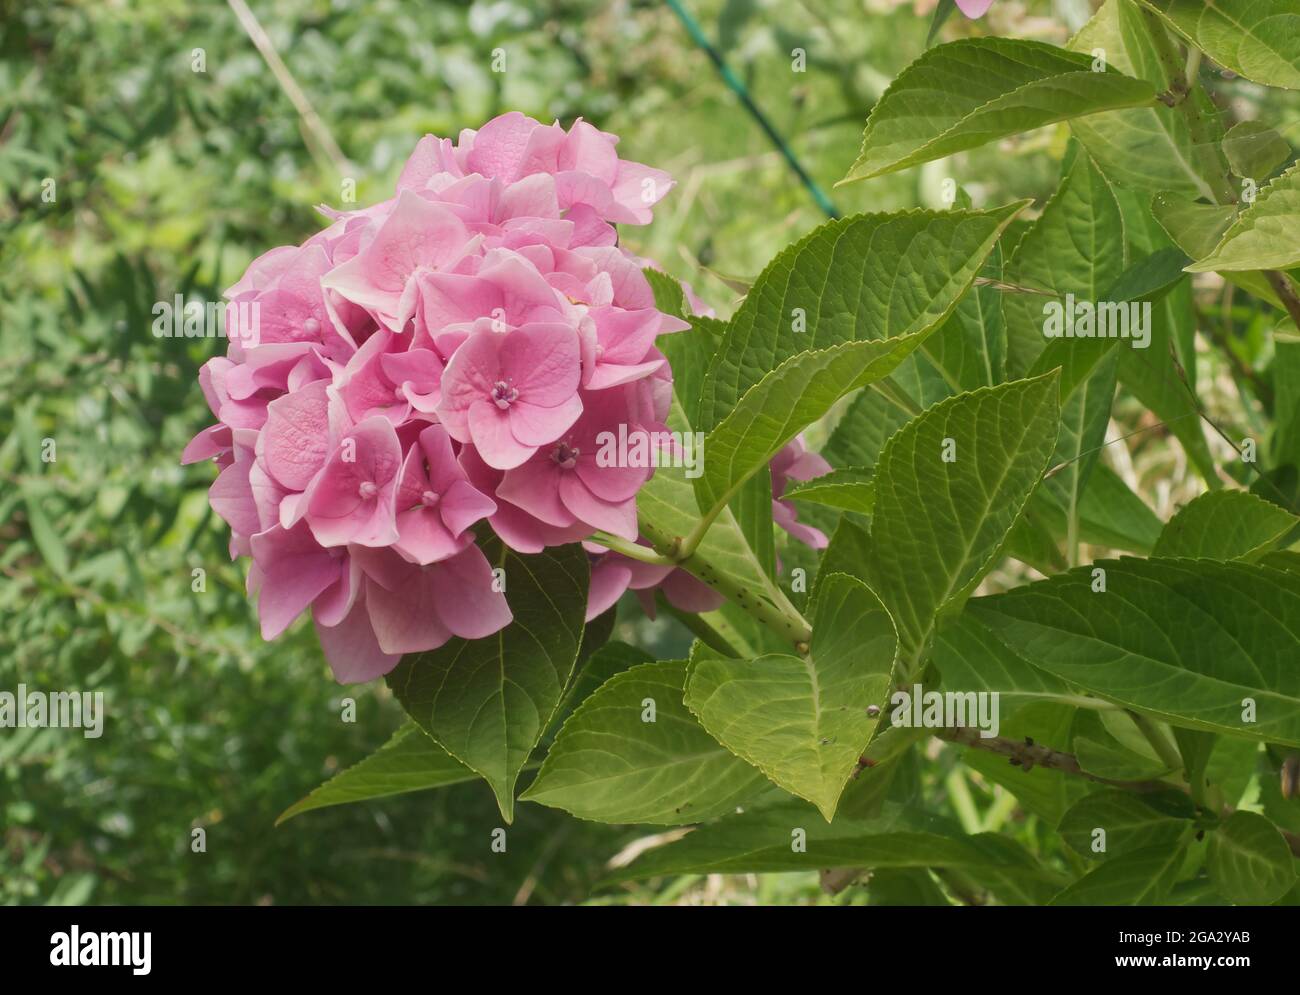 Arbusto di hydrangea con fiori rosa nel giardino. Hydrangea è conosciuto anche come hortensia. Foto Stock